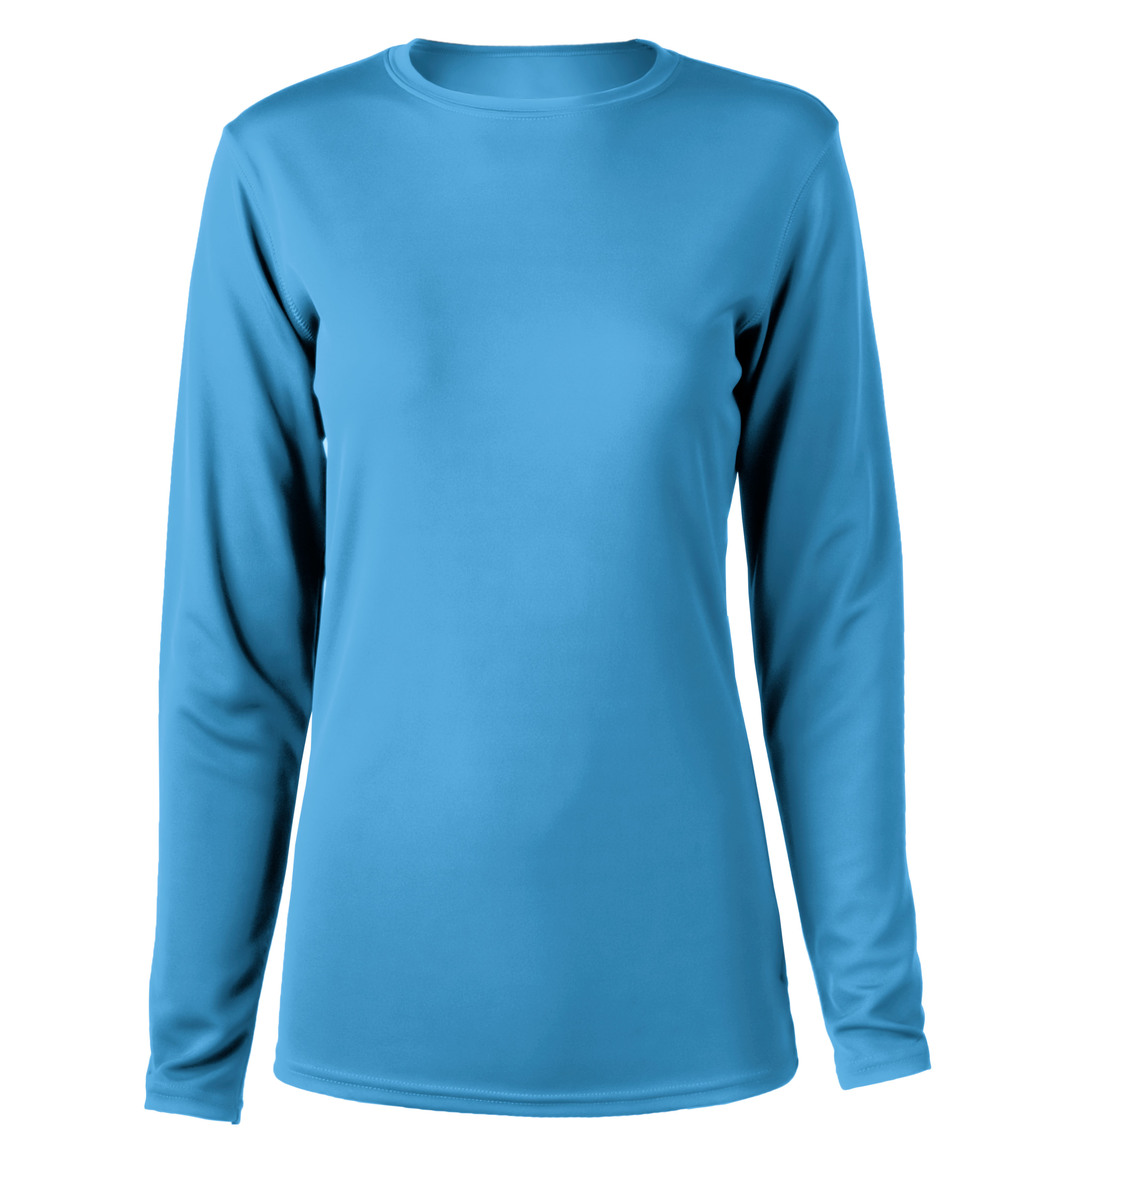 Zorrel Z6051 - Women's Chicago Long Sleeve Training Tee $9.59 - T-Shirts